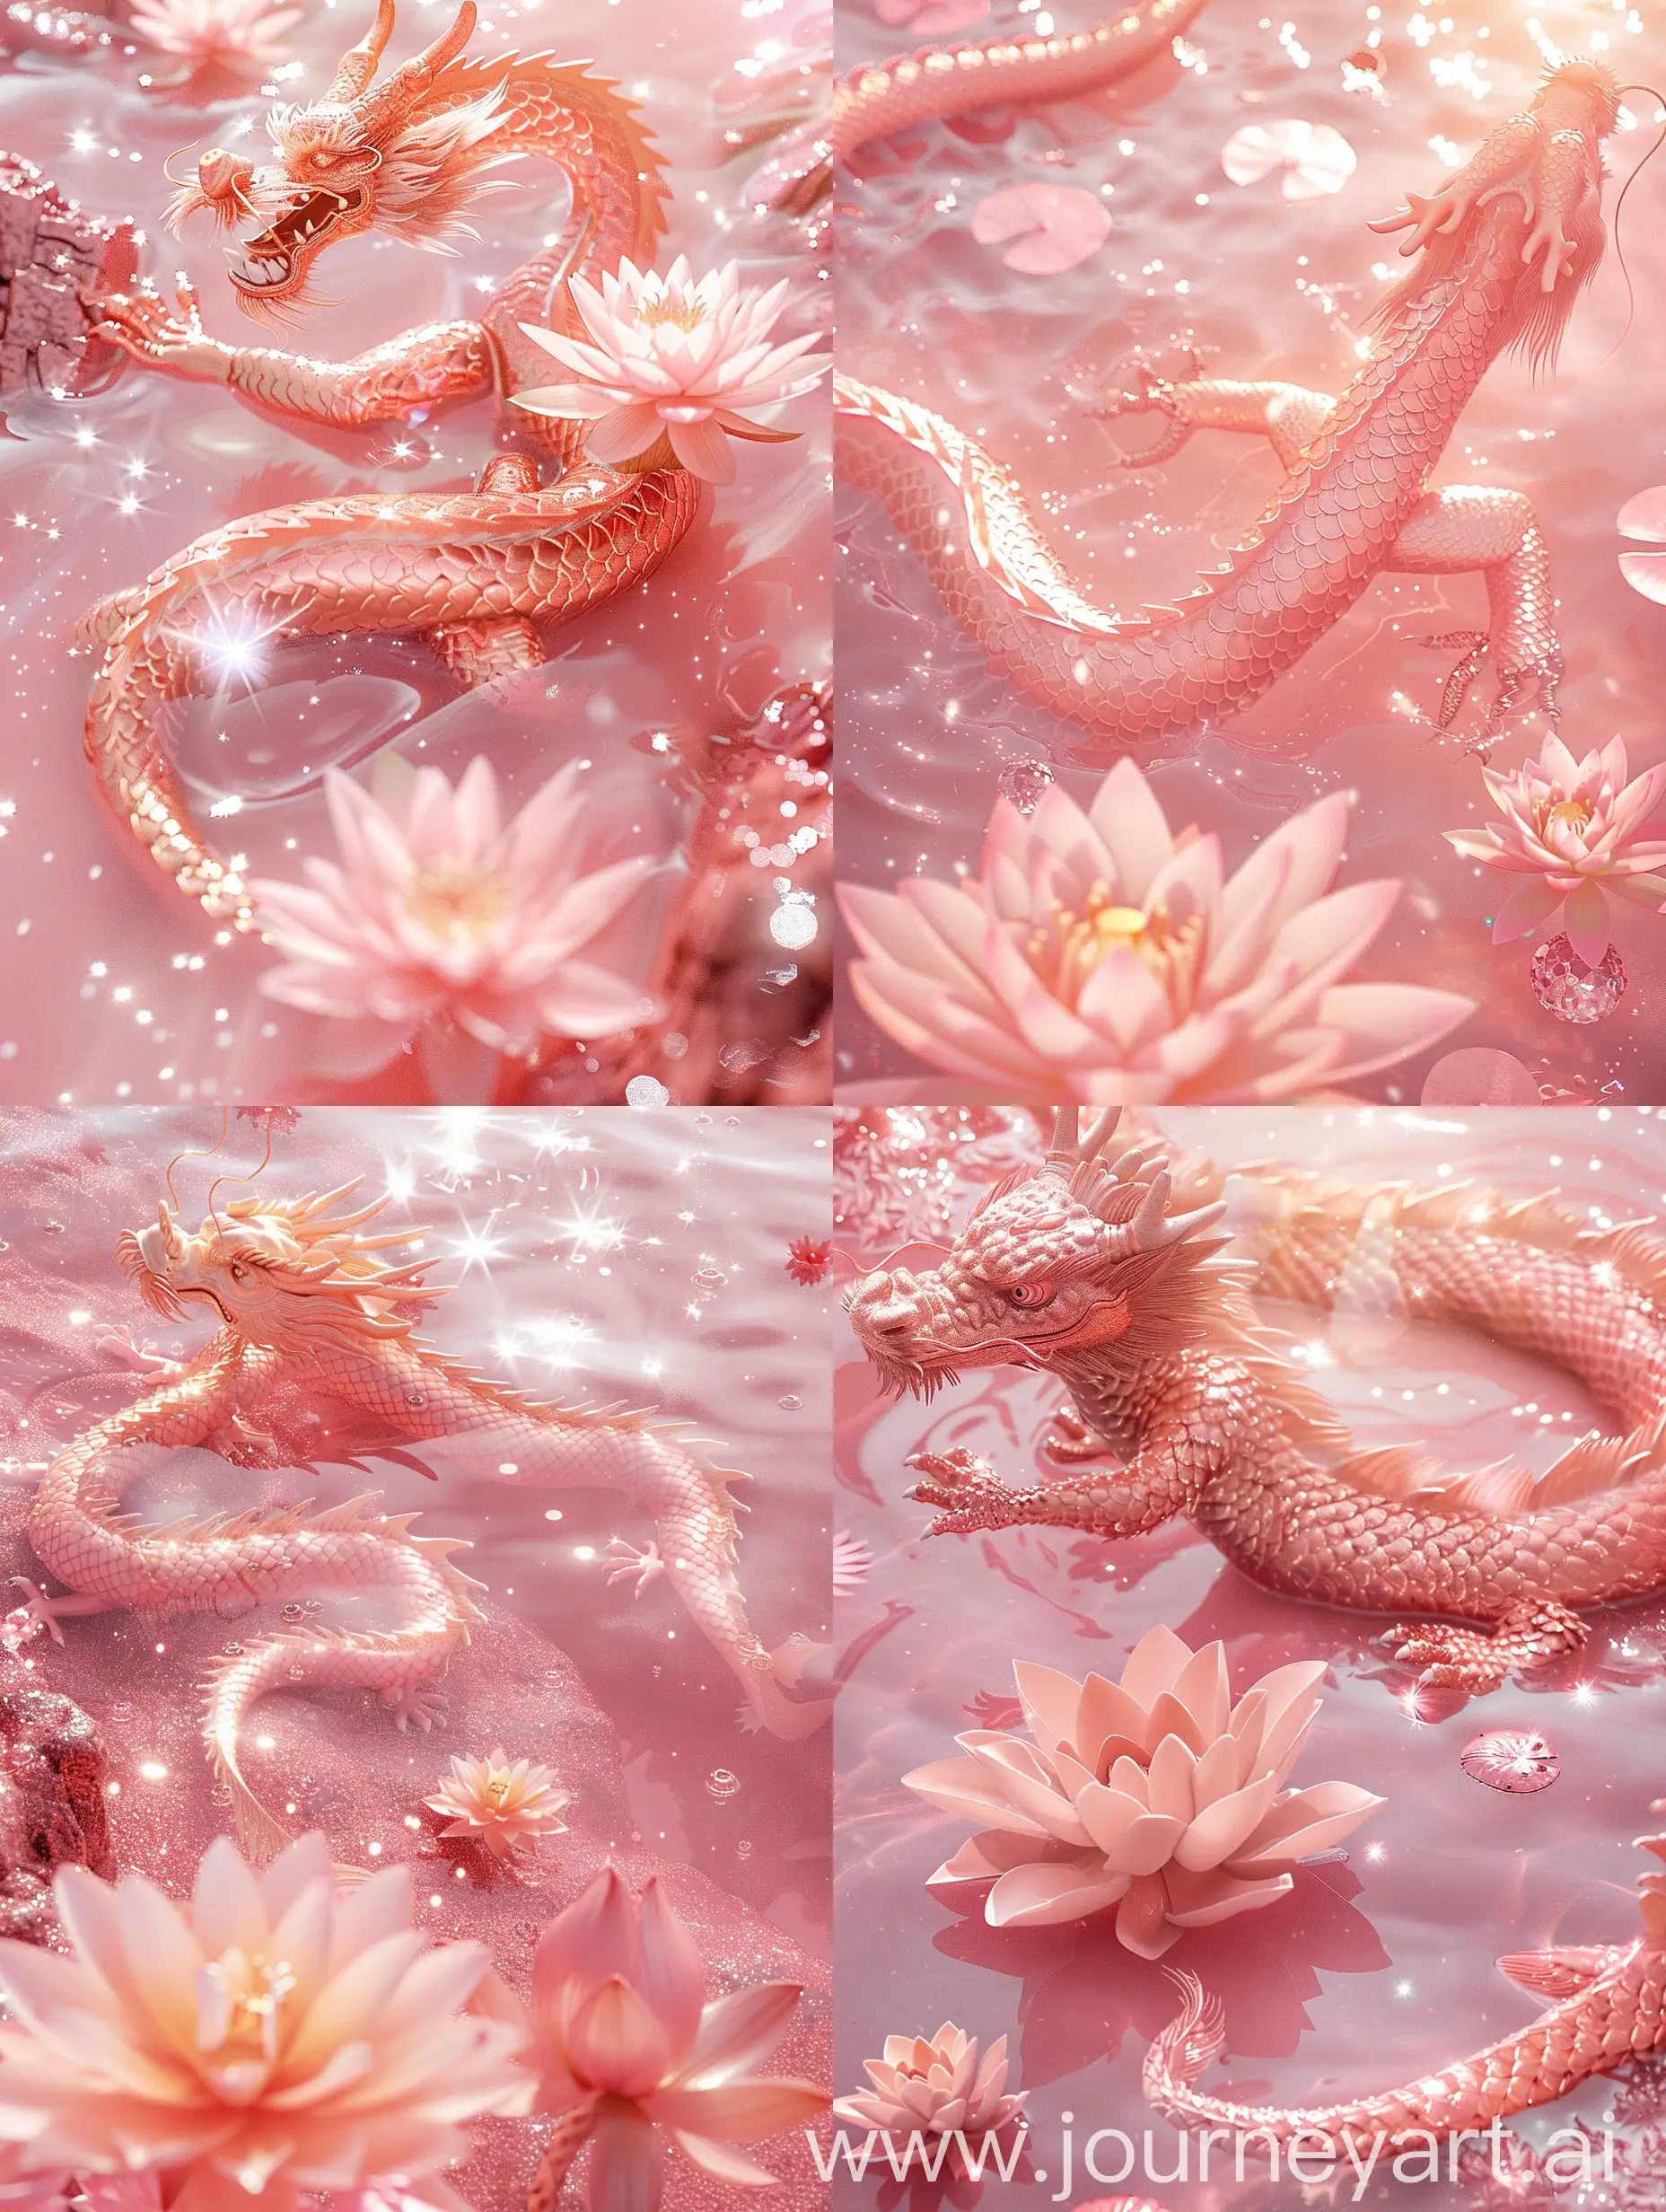 一只桃粉色的中国龙，在波光粼粼的粉色水中盘旋，粉红色的莲花漂浮在水面上，闪闪发光的龙鳞，超现实主义摄影